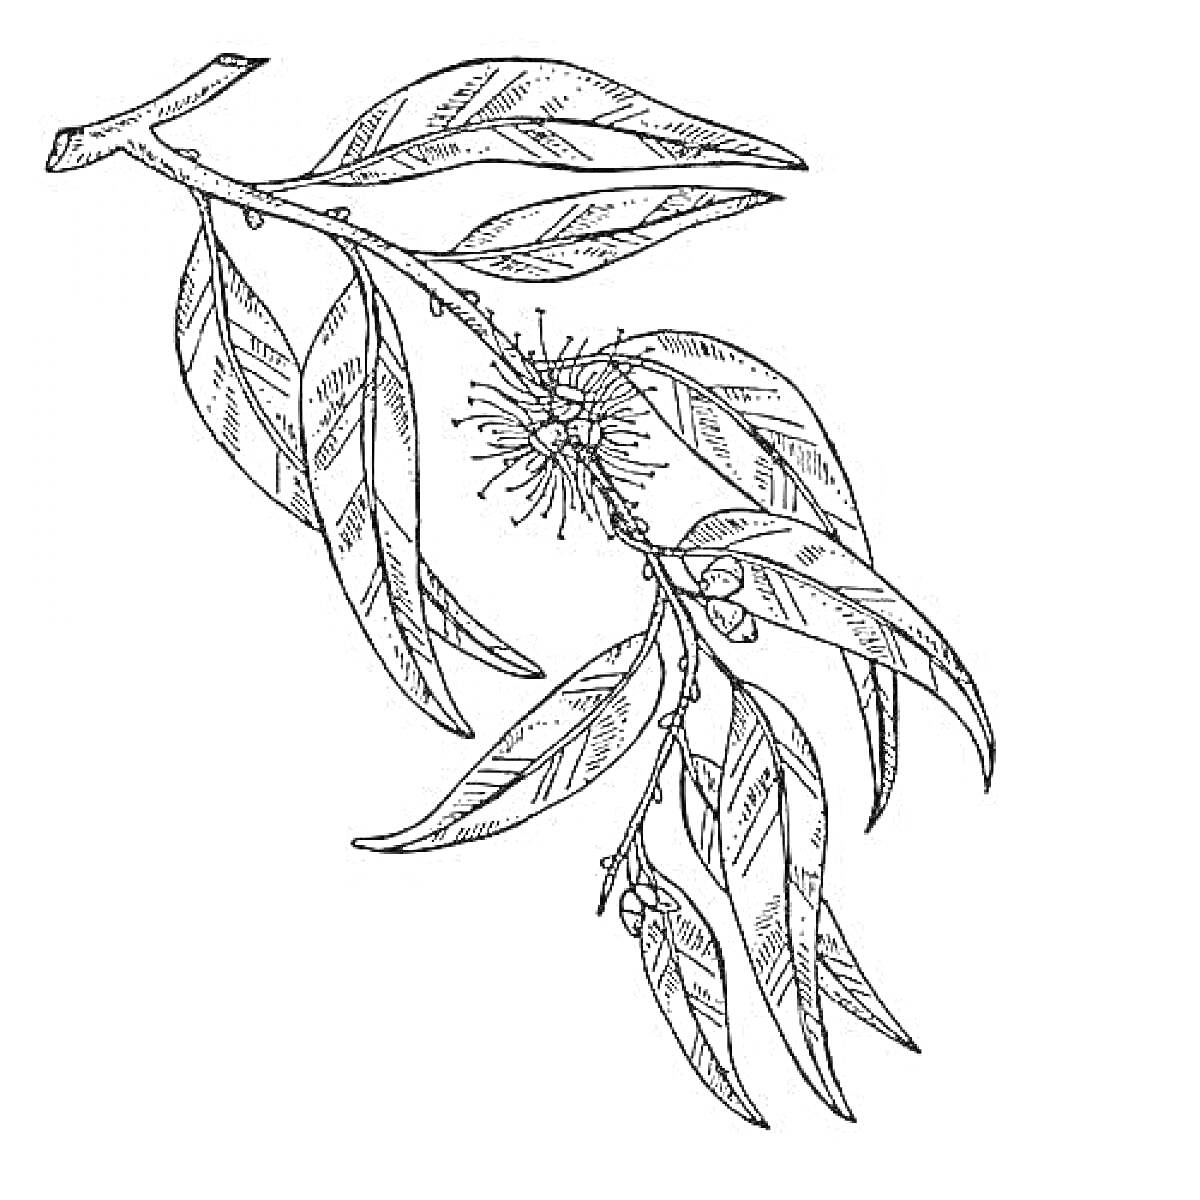  Ветвь эвкалипта с листьями, цветами и плодами